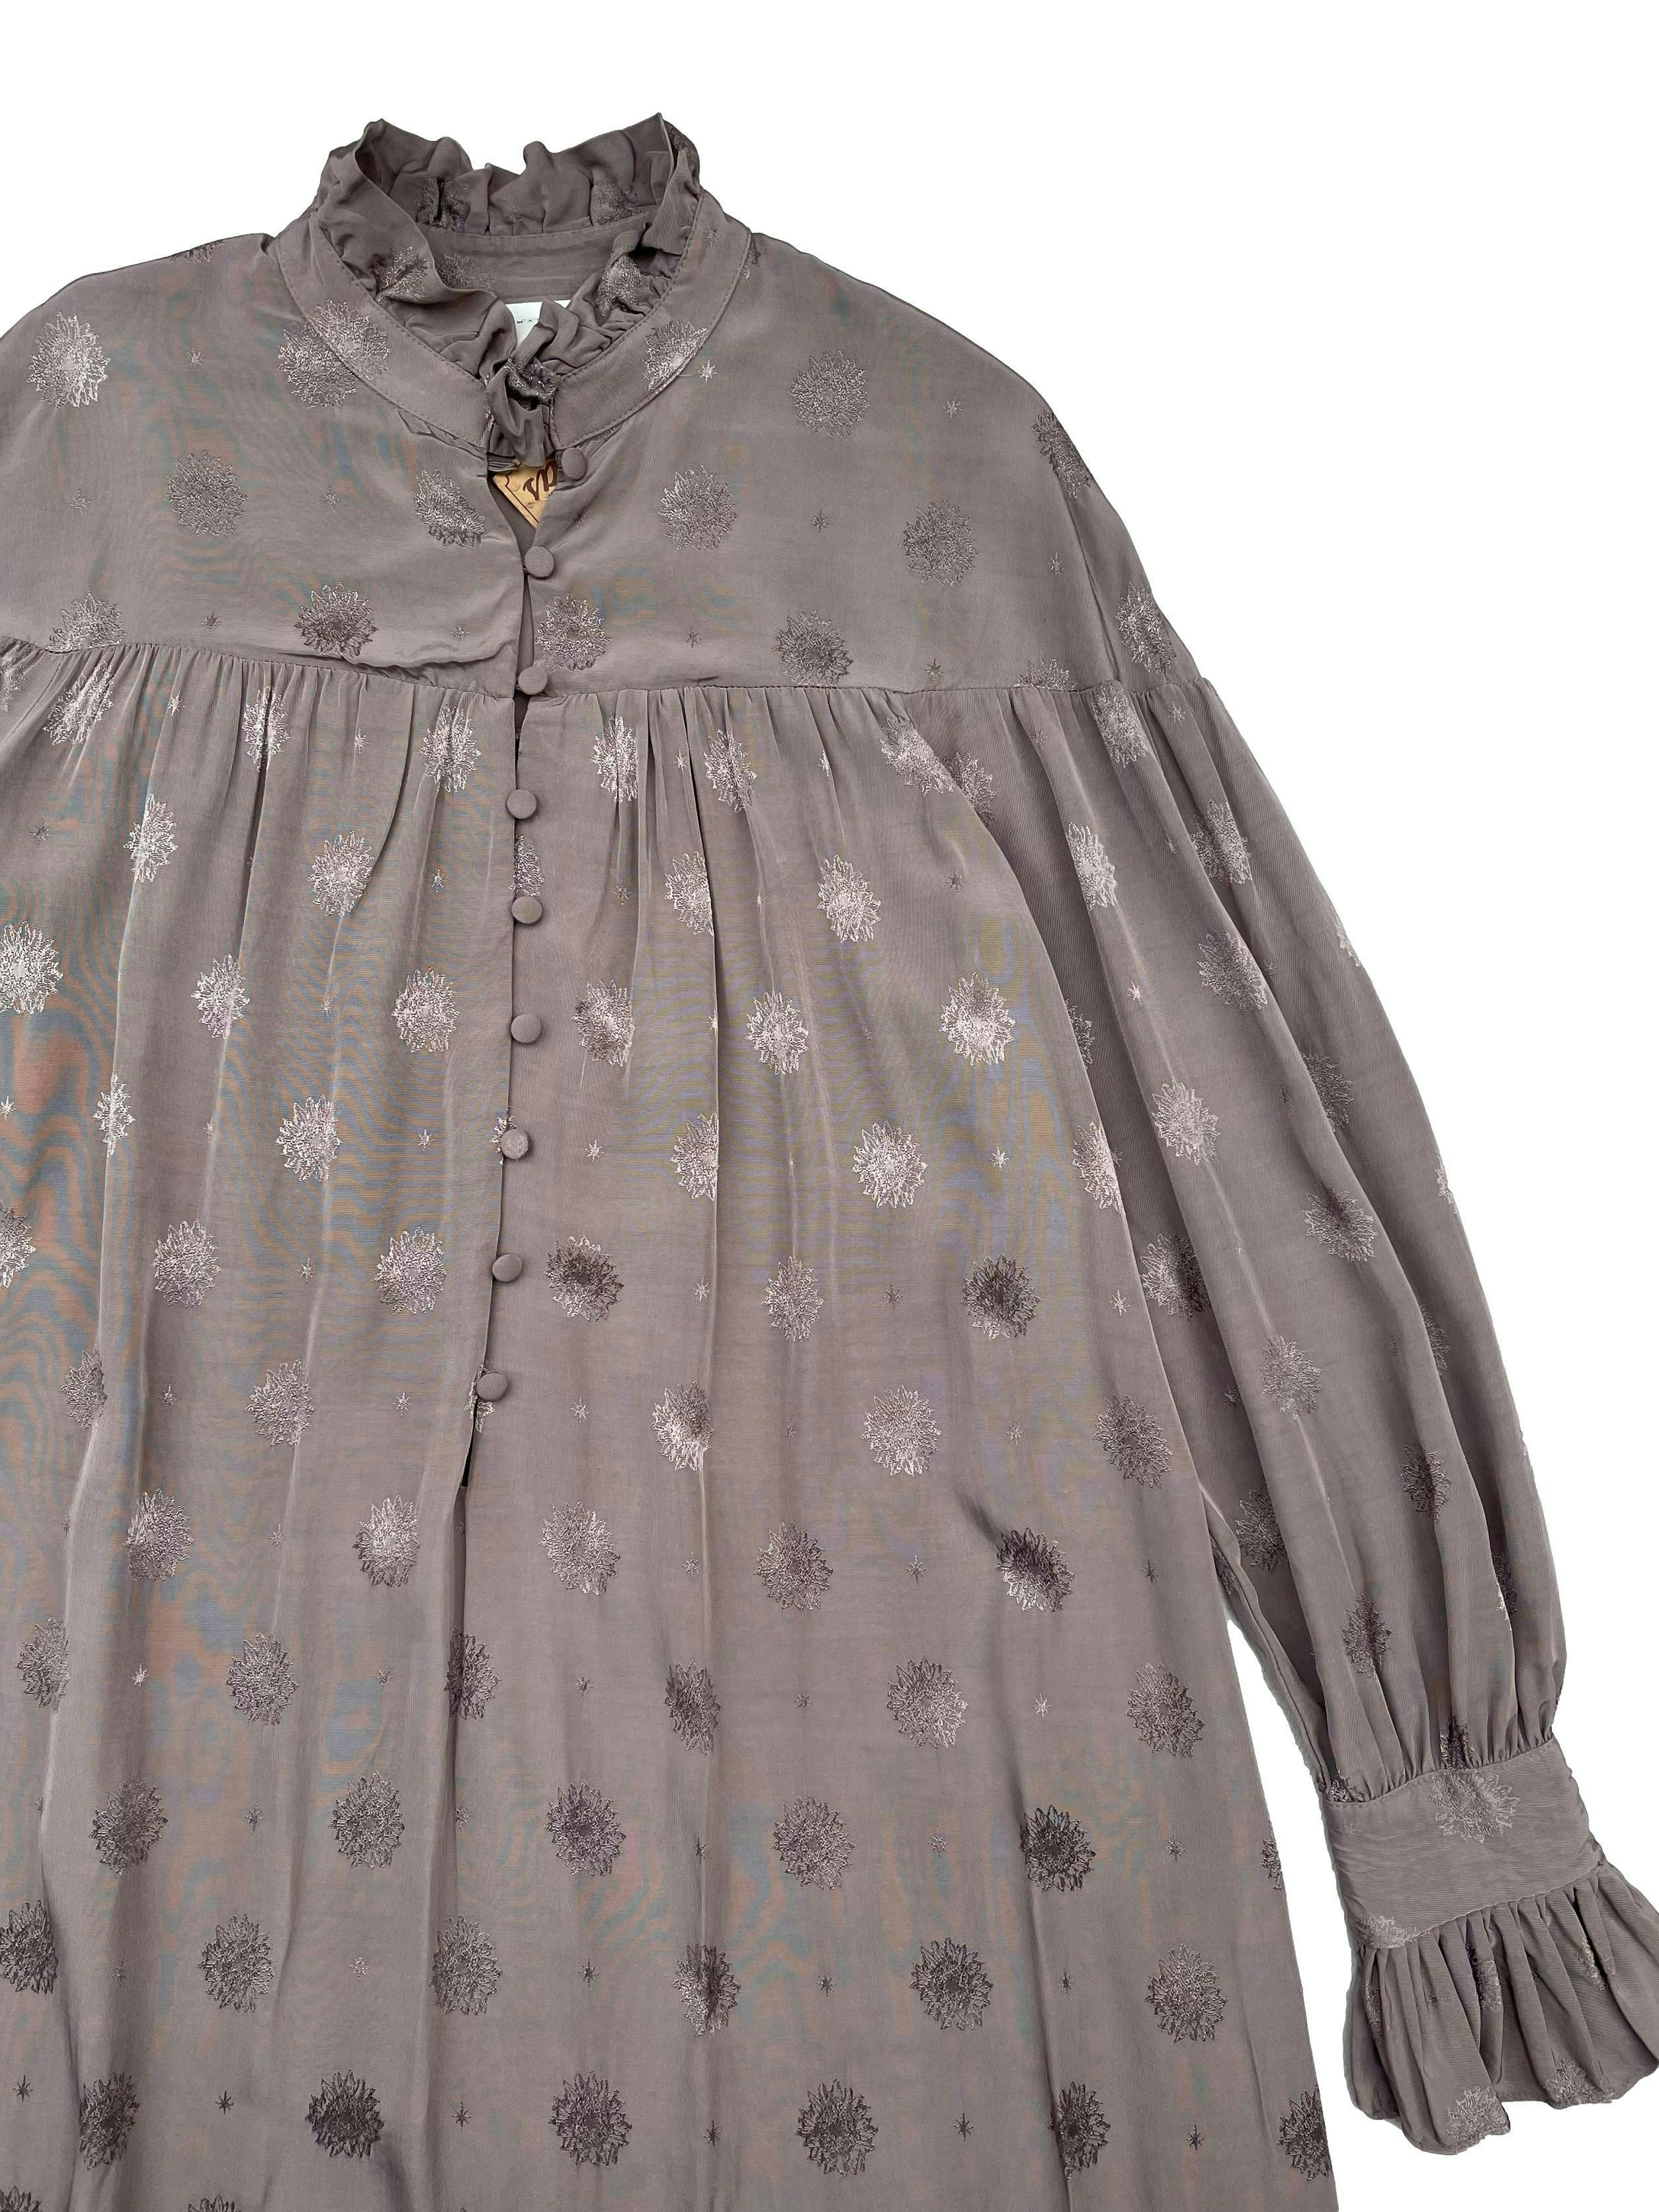 Vestido túnica Sandra Mansour x H&M, tela viscosa fluida con brocado al tono, botones forrados en el pecho y puños, aberturas laterales en la basta. Busto 110cm Largo 130cm